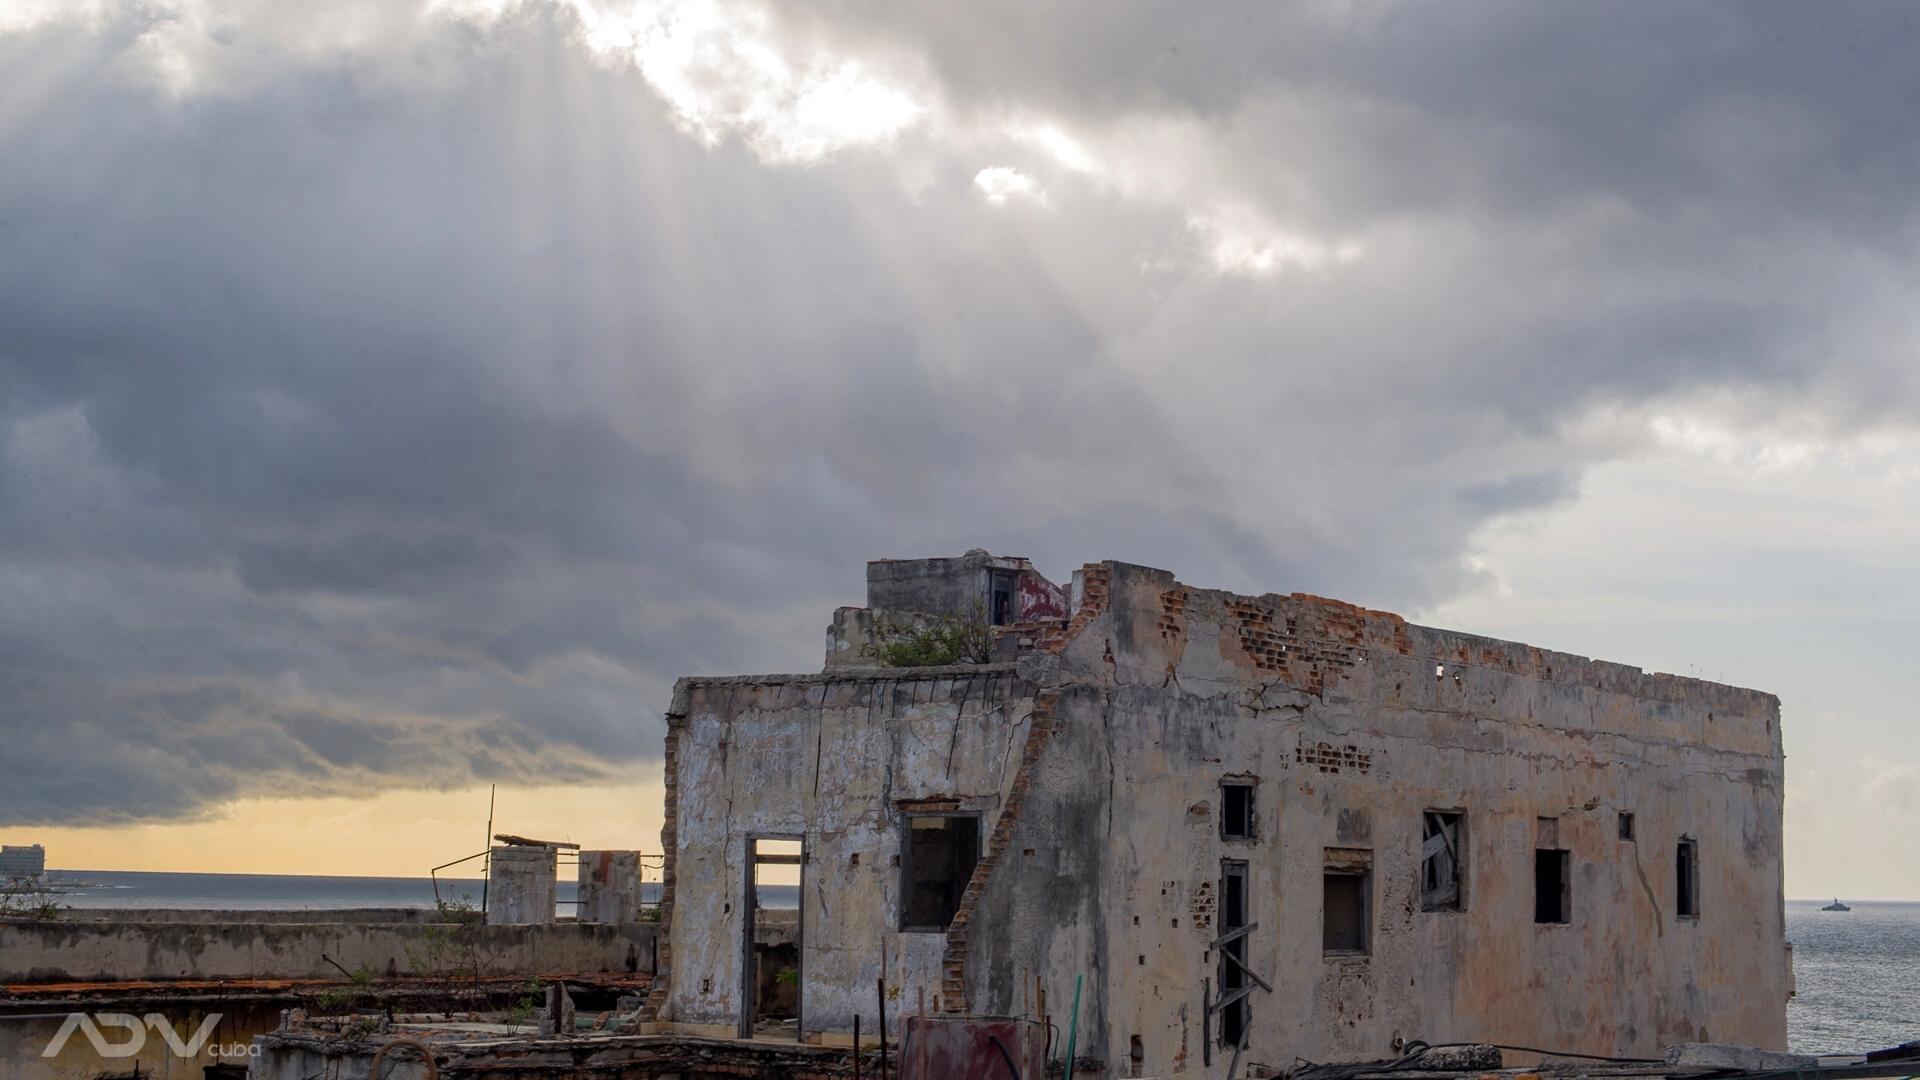 Rayos de sol entre tormenta sobre ruina en La Habana. Foto: ADN Cuba